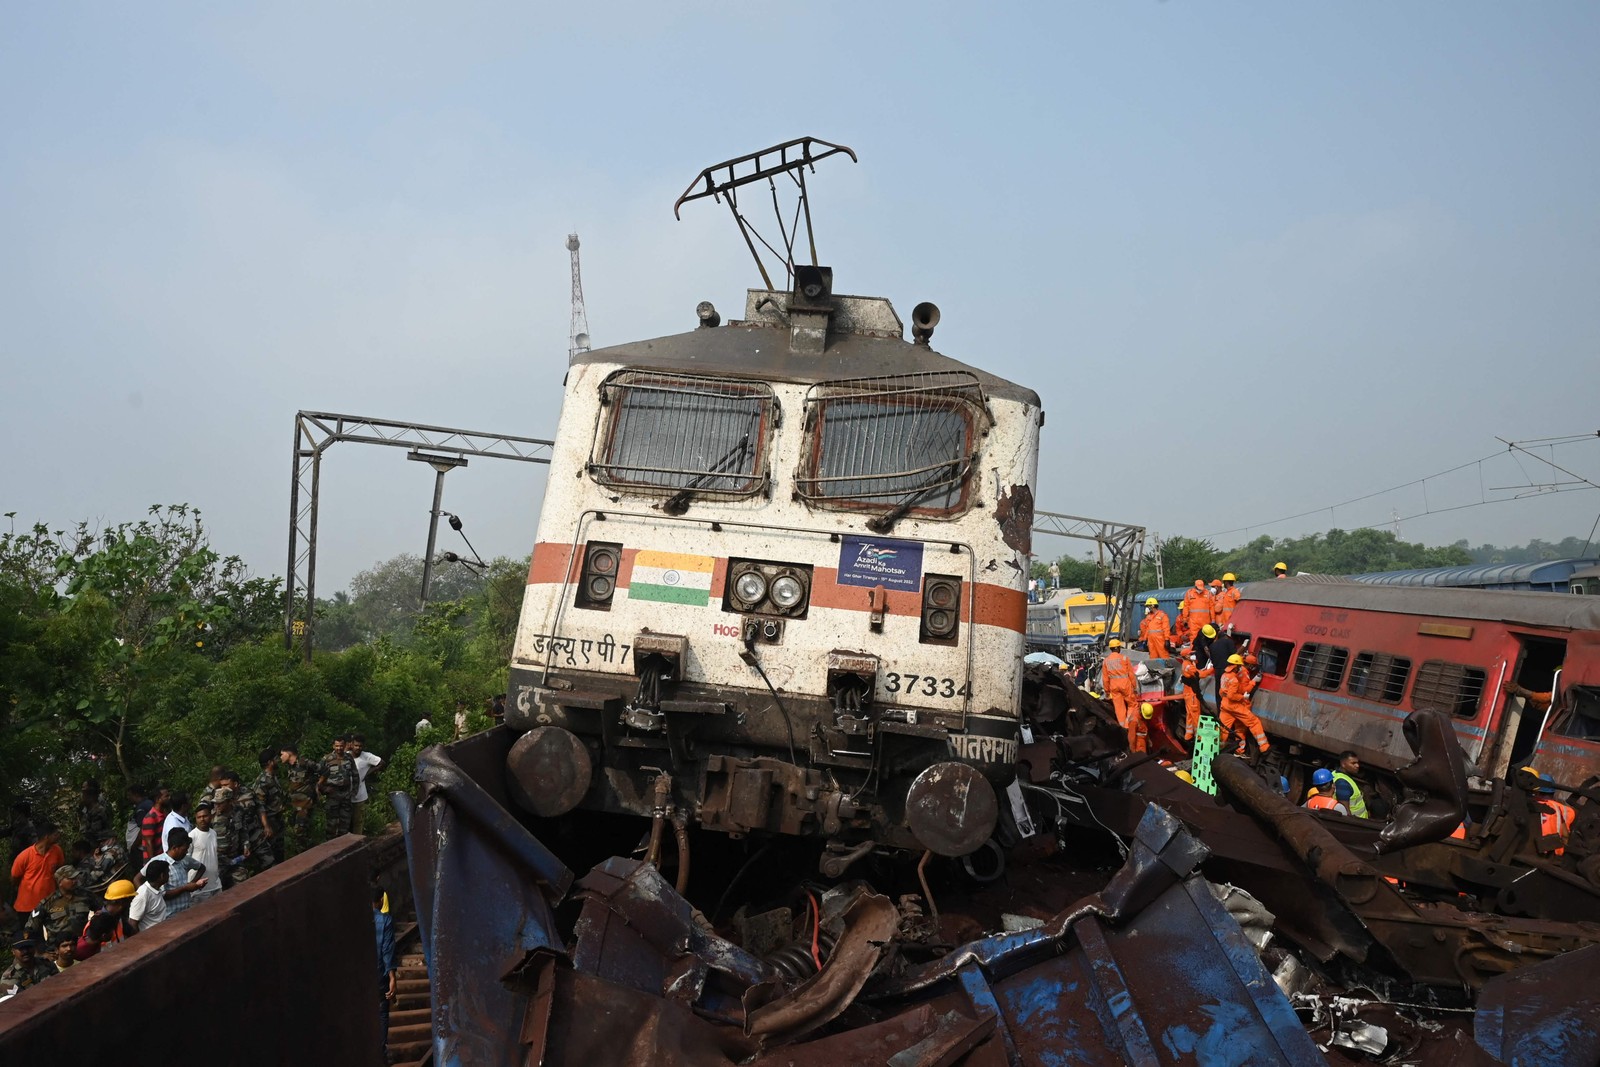 Equipes de resgate se reúnem em torno dos trens danificados no local da colisão perto de Balasore, a cerca de 200 km da capital do estado Bhubaneswar — Foto: DIBYANGSHU SARKAR / AFP)